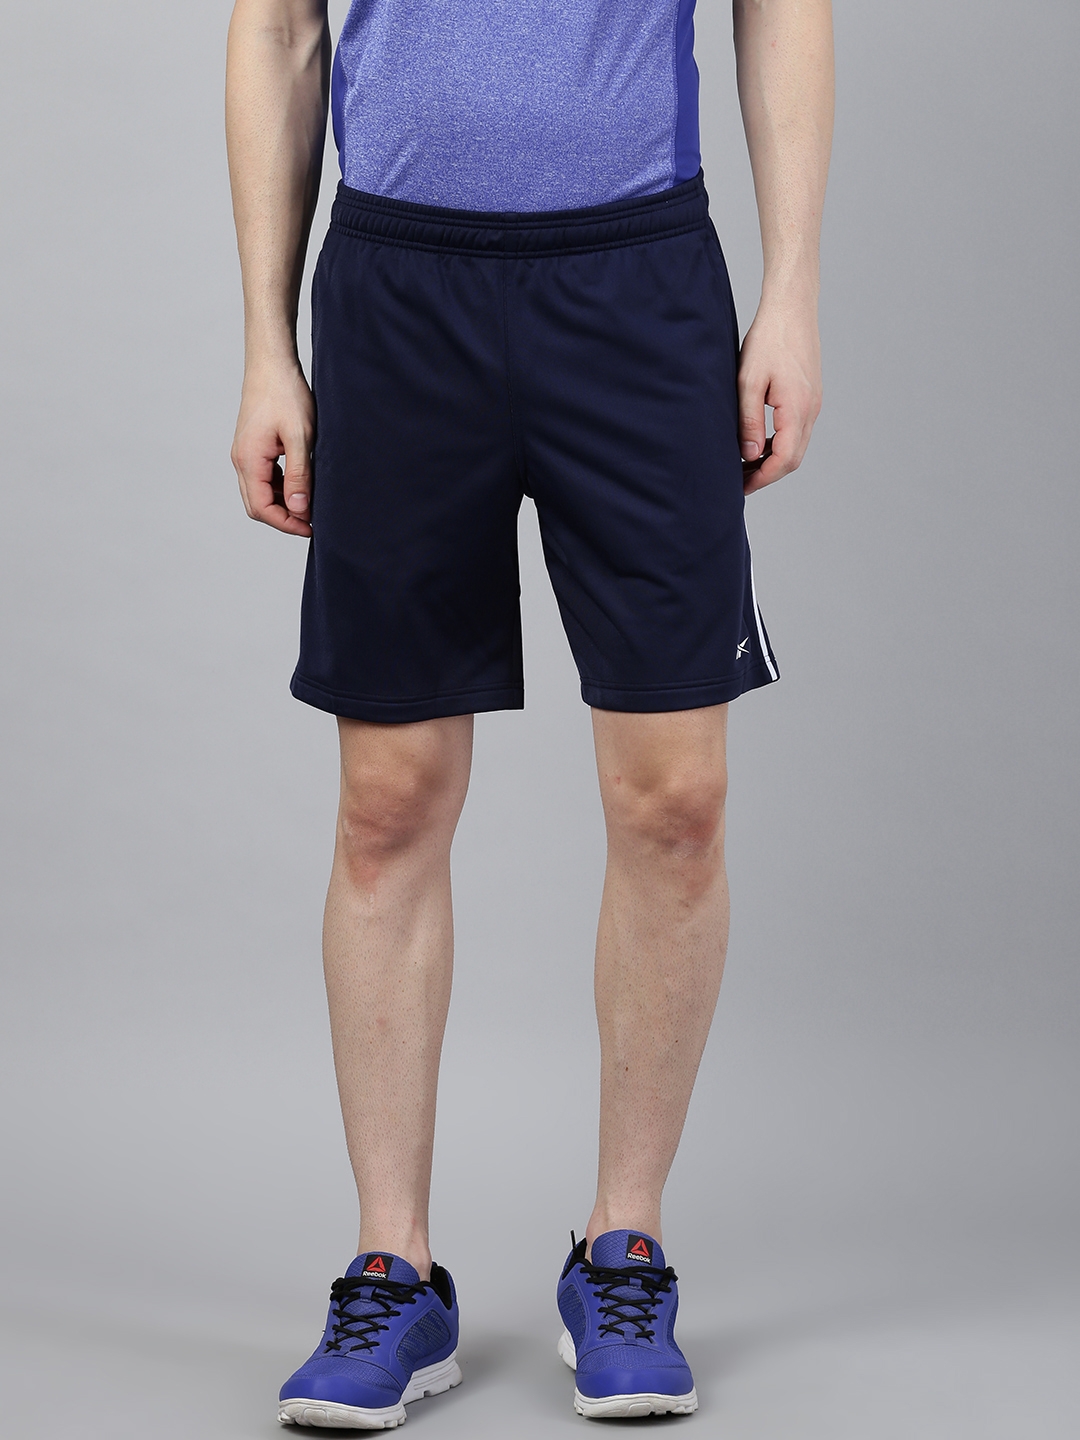 Reebok Men Navy Blue Solid Regular Fit Sports Shorts